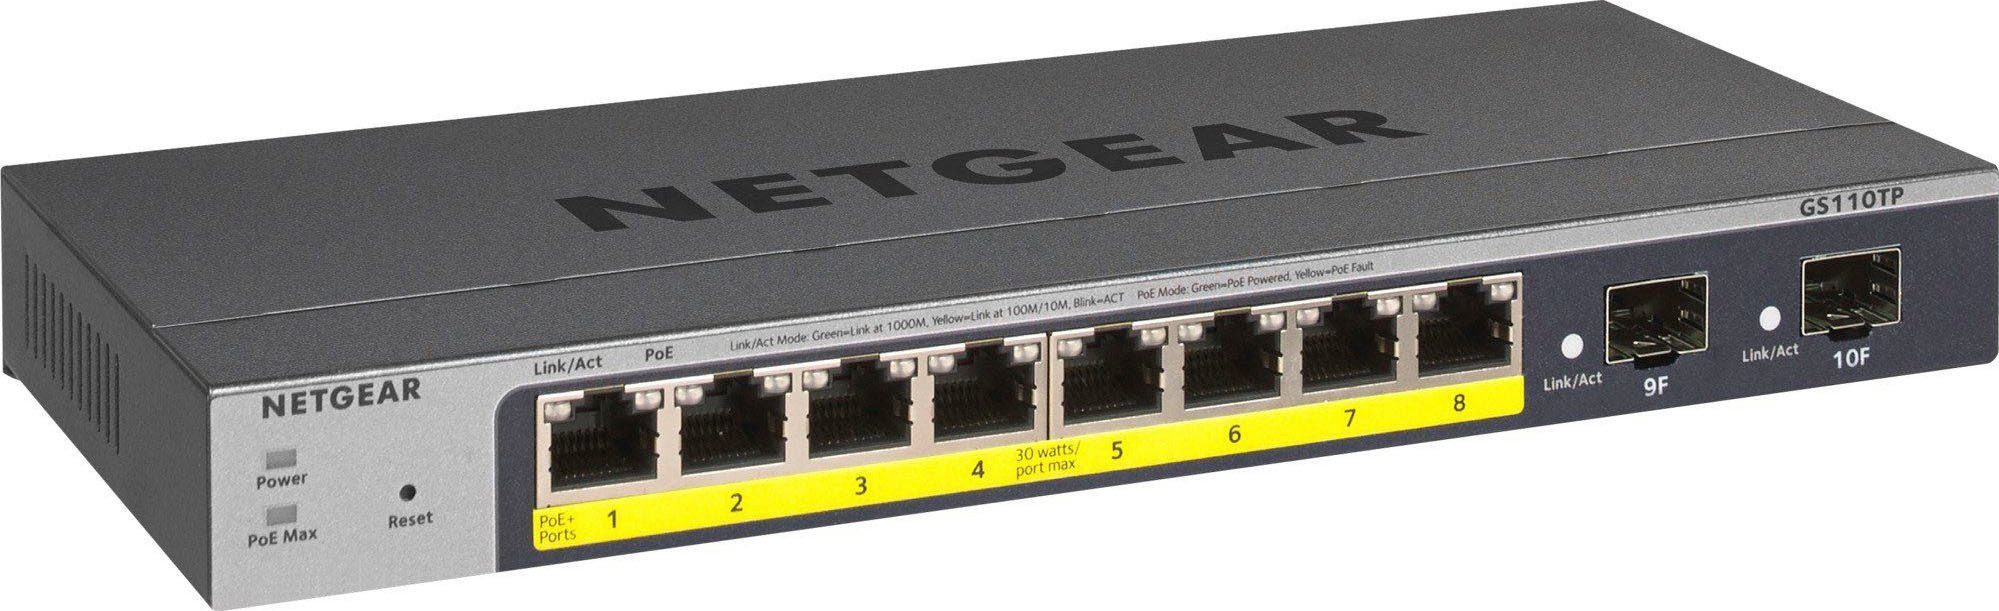 NETGEAR Nighthawk XR1000 WLAN-Router